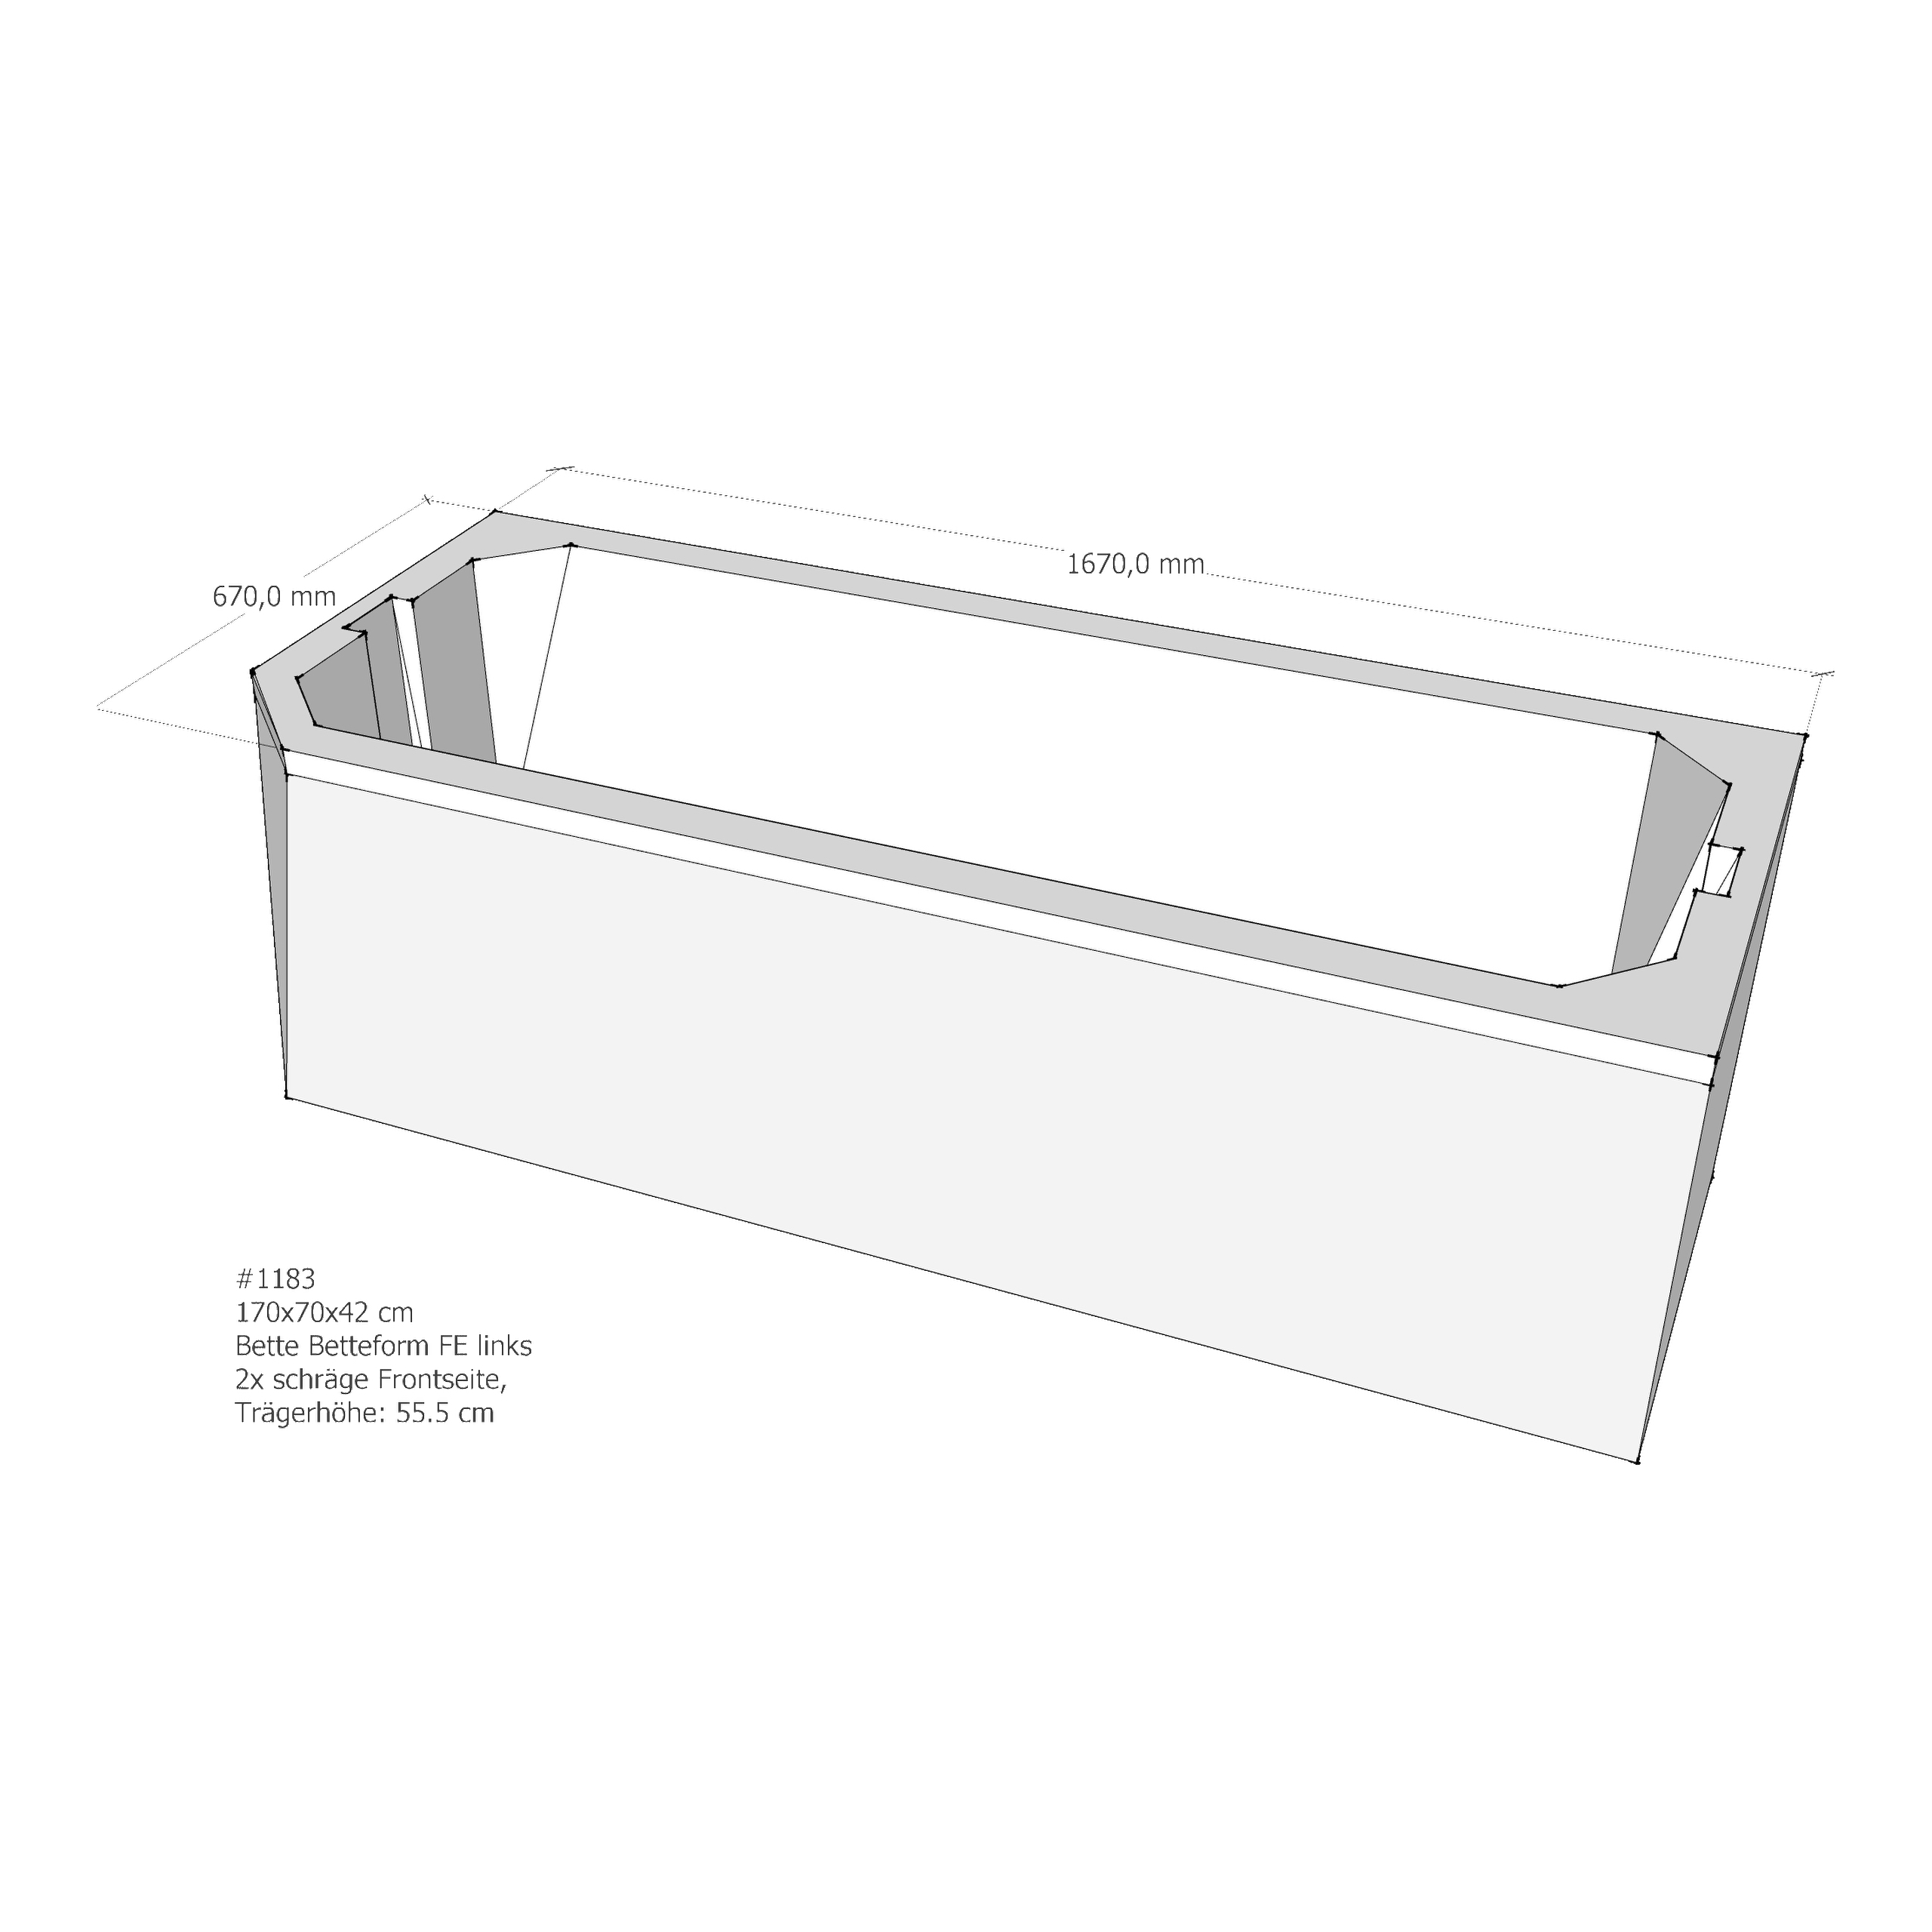 Badewannenträger für Bette BetteProfi-Form FE links 170 × 70 × 42 cm